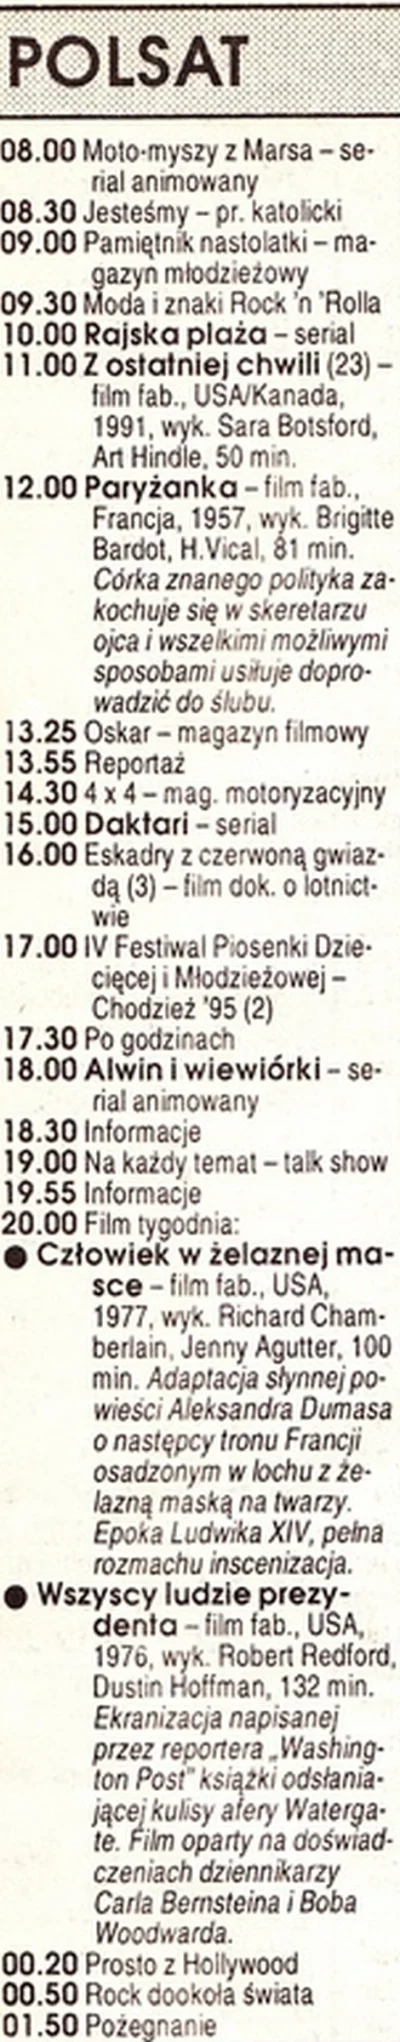 myszczur - #polsat Program TV z końca lipca 1995 (prawdopodobnie sobota) #gimbyniezna...